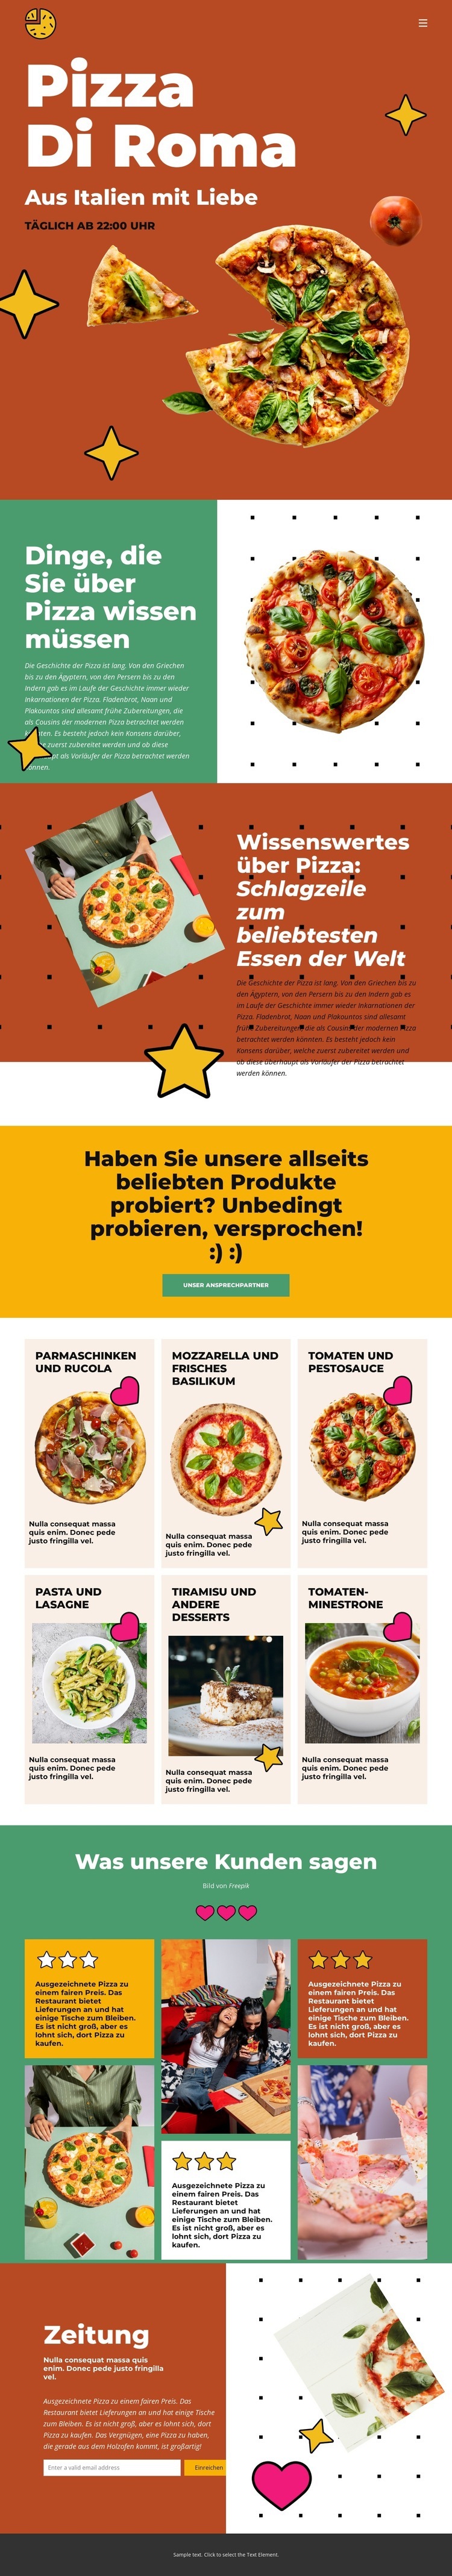 Dinge, die Sie über Pizza wissen müssen Website design